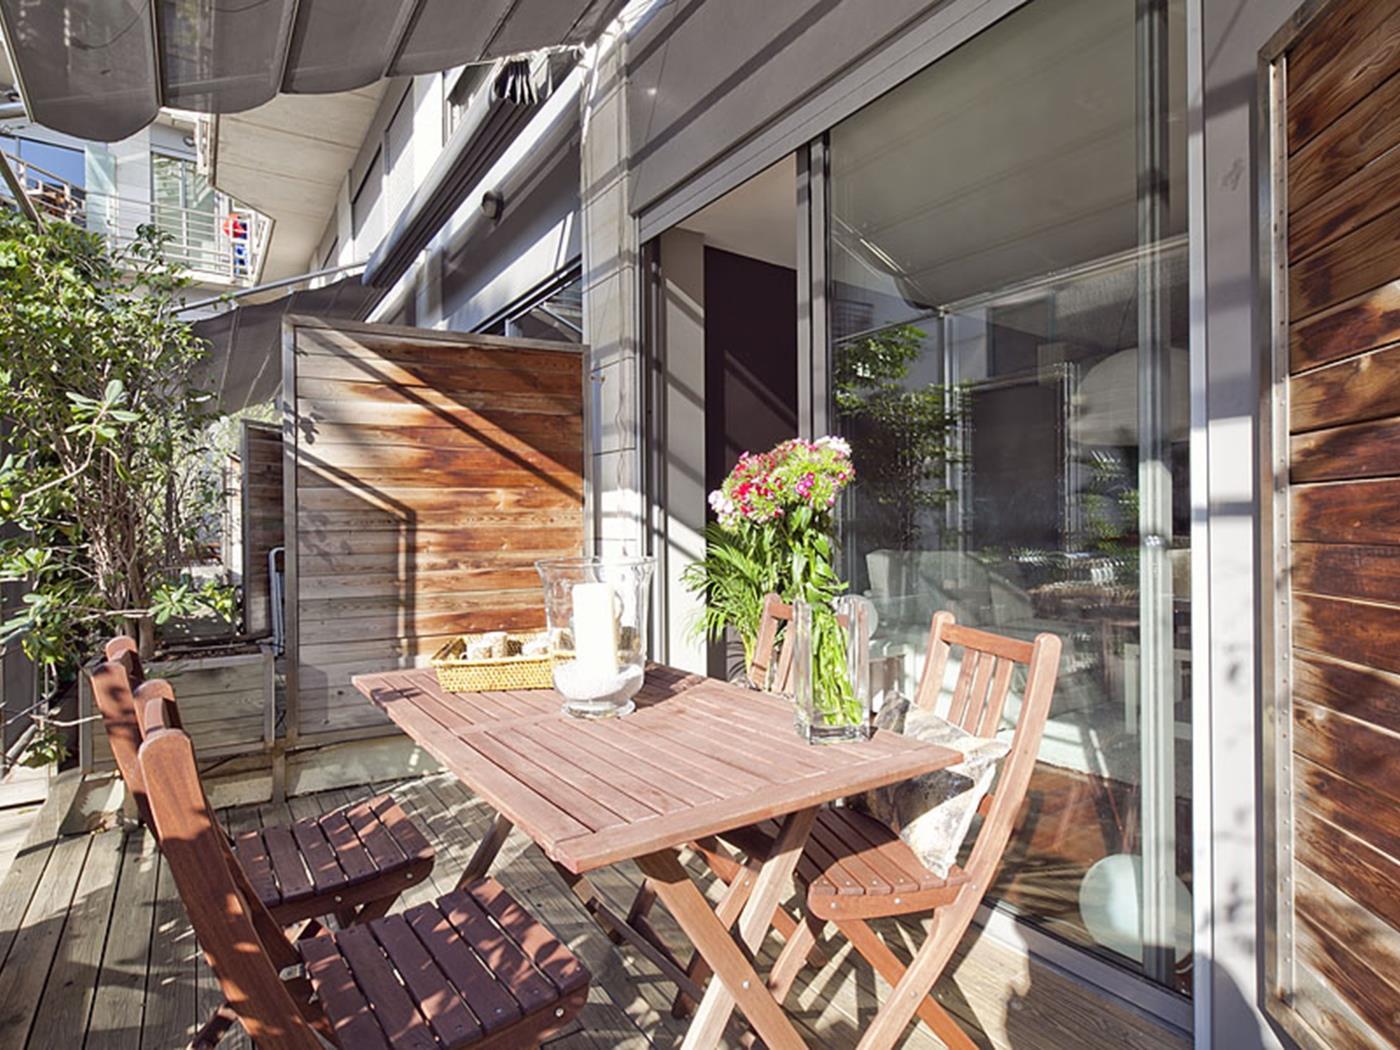 دوبلكس شقة للإيجار في برشلونة مع بركة سباحة - My Space Barcelona شقة